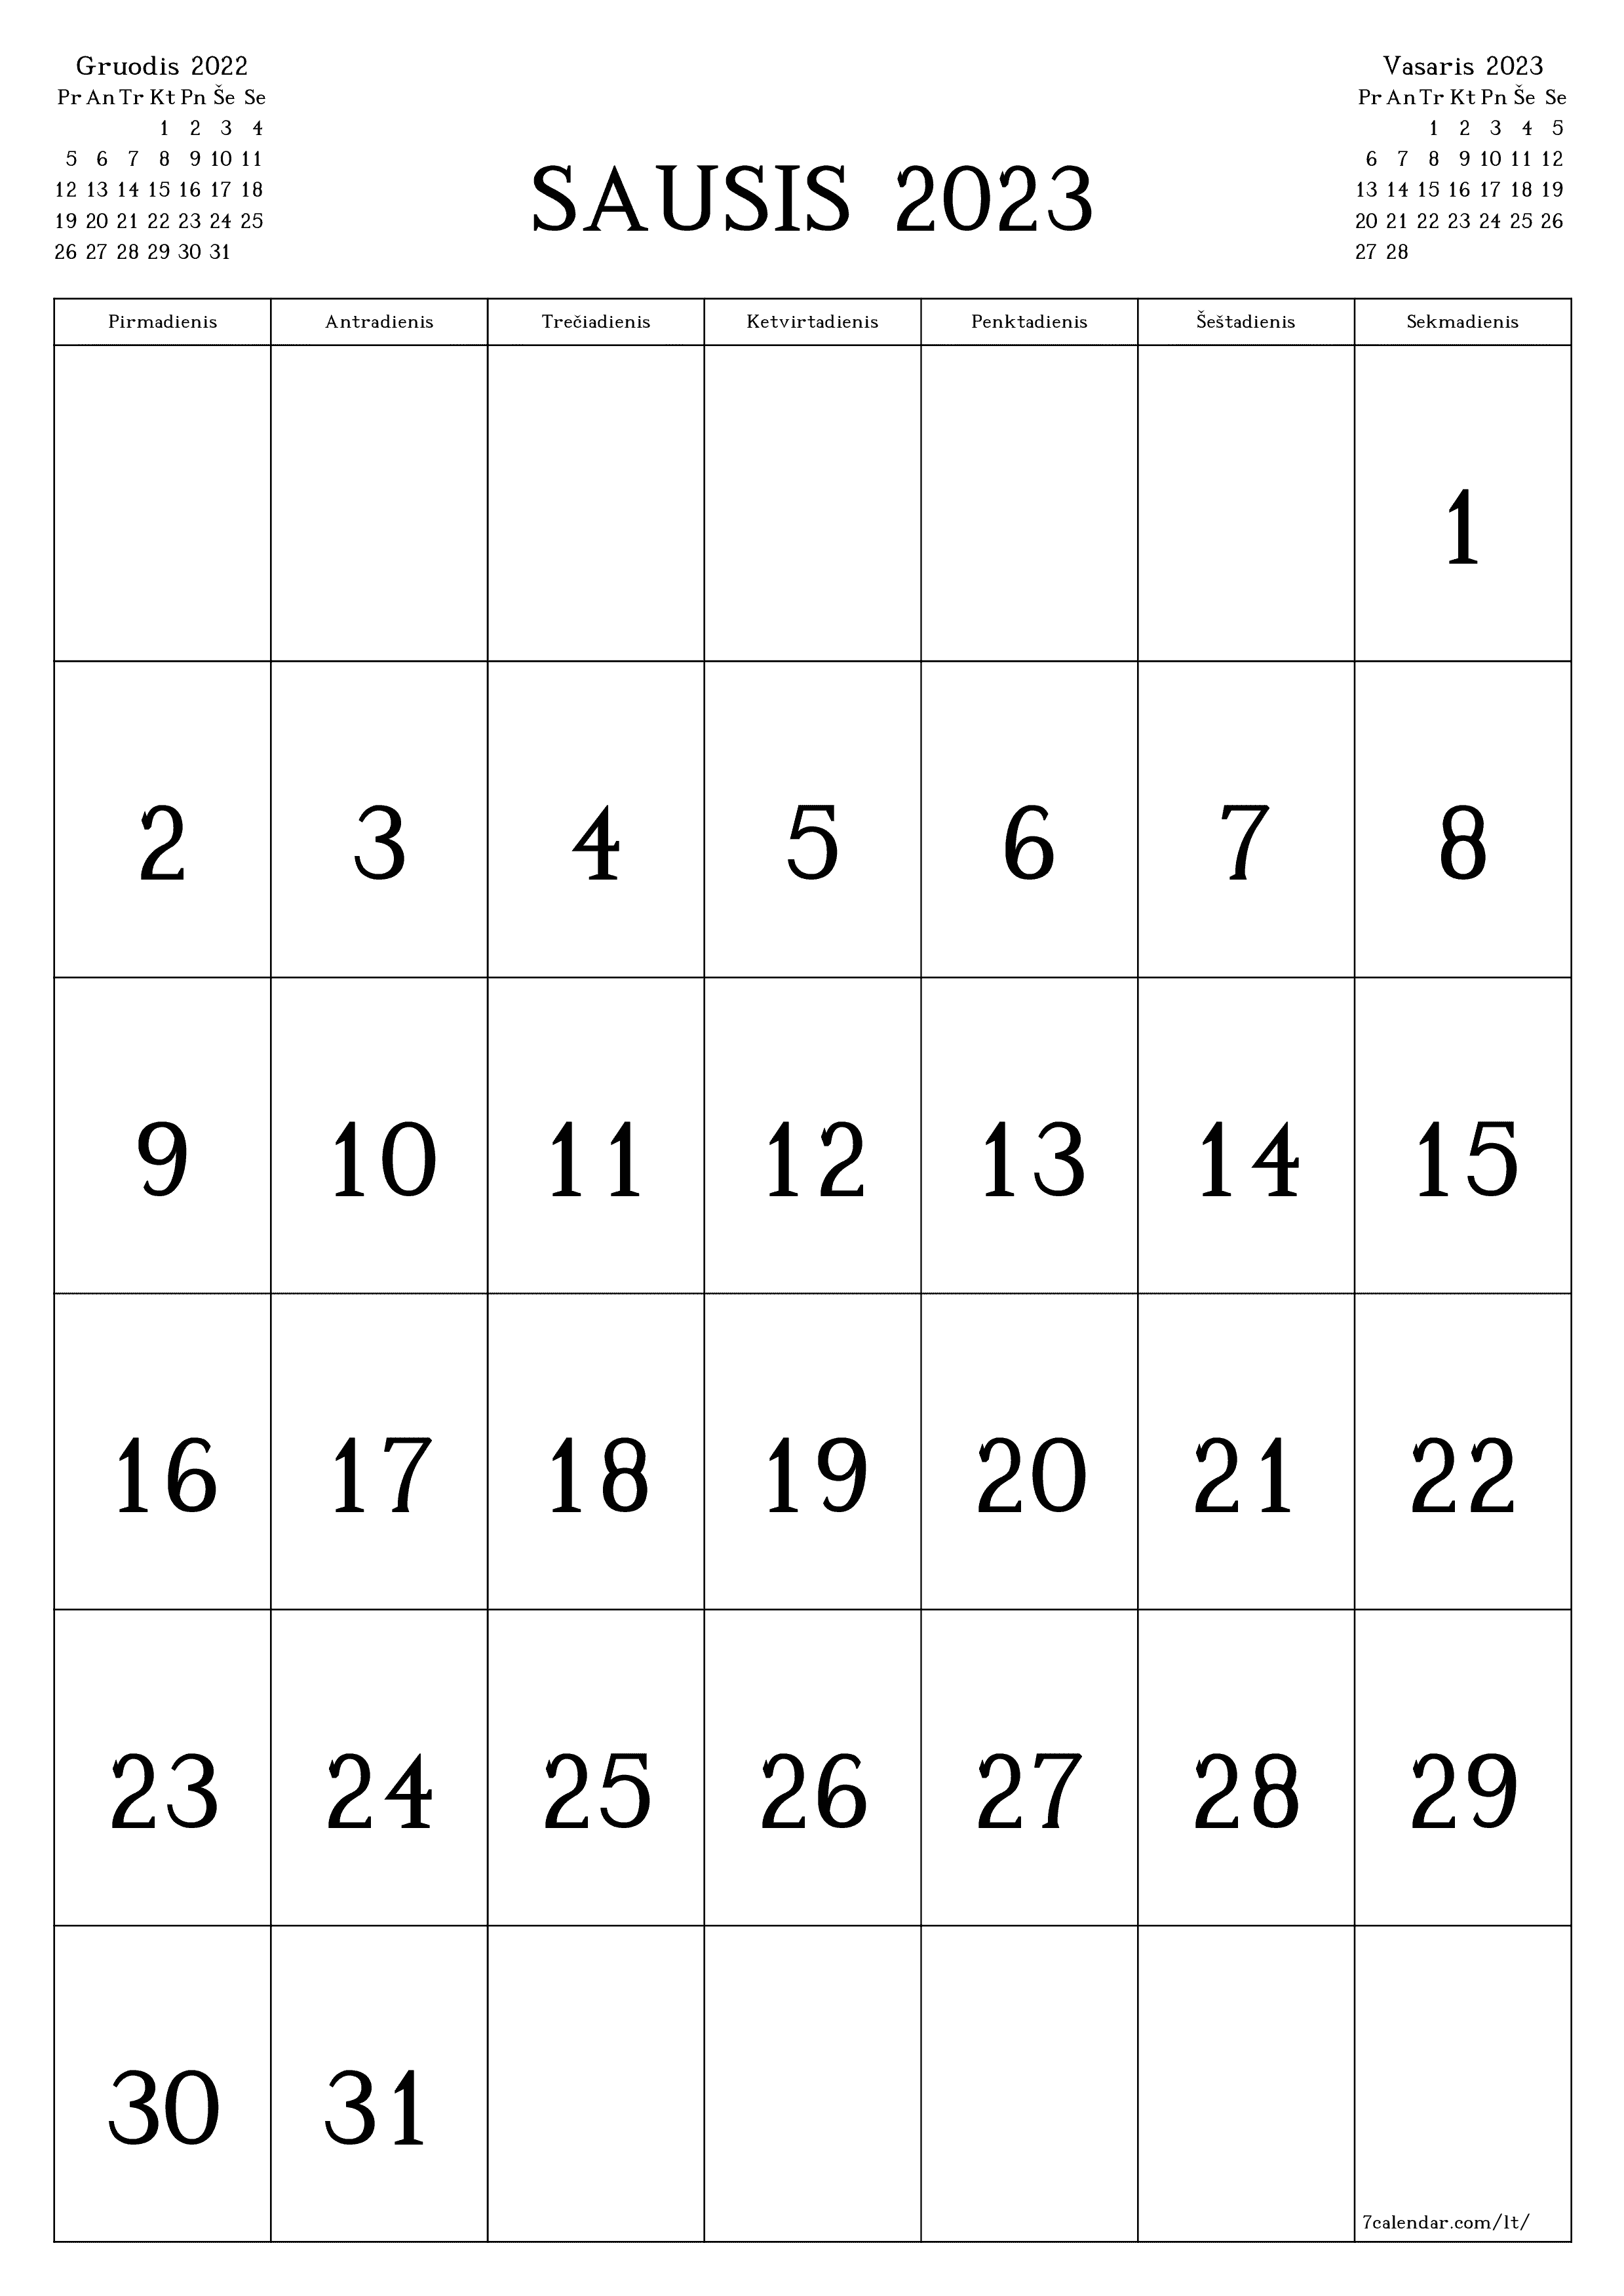 Tuščias mėnesio kalendorius Sausis 2023 išsaugokite ir atsispausdinkite PDF formatu PNG Lithuanian - 7calendar.com